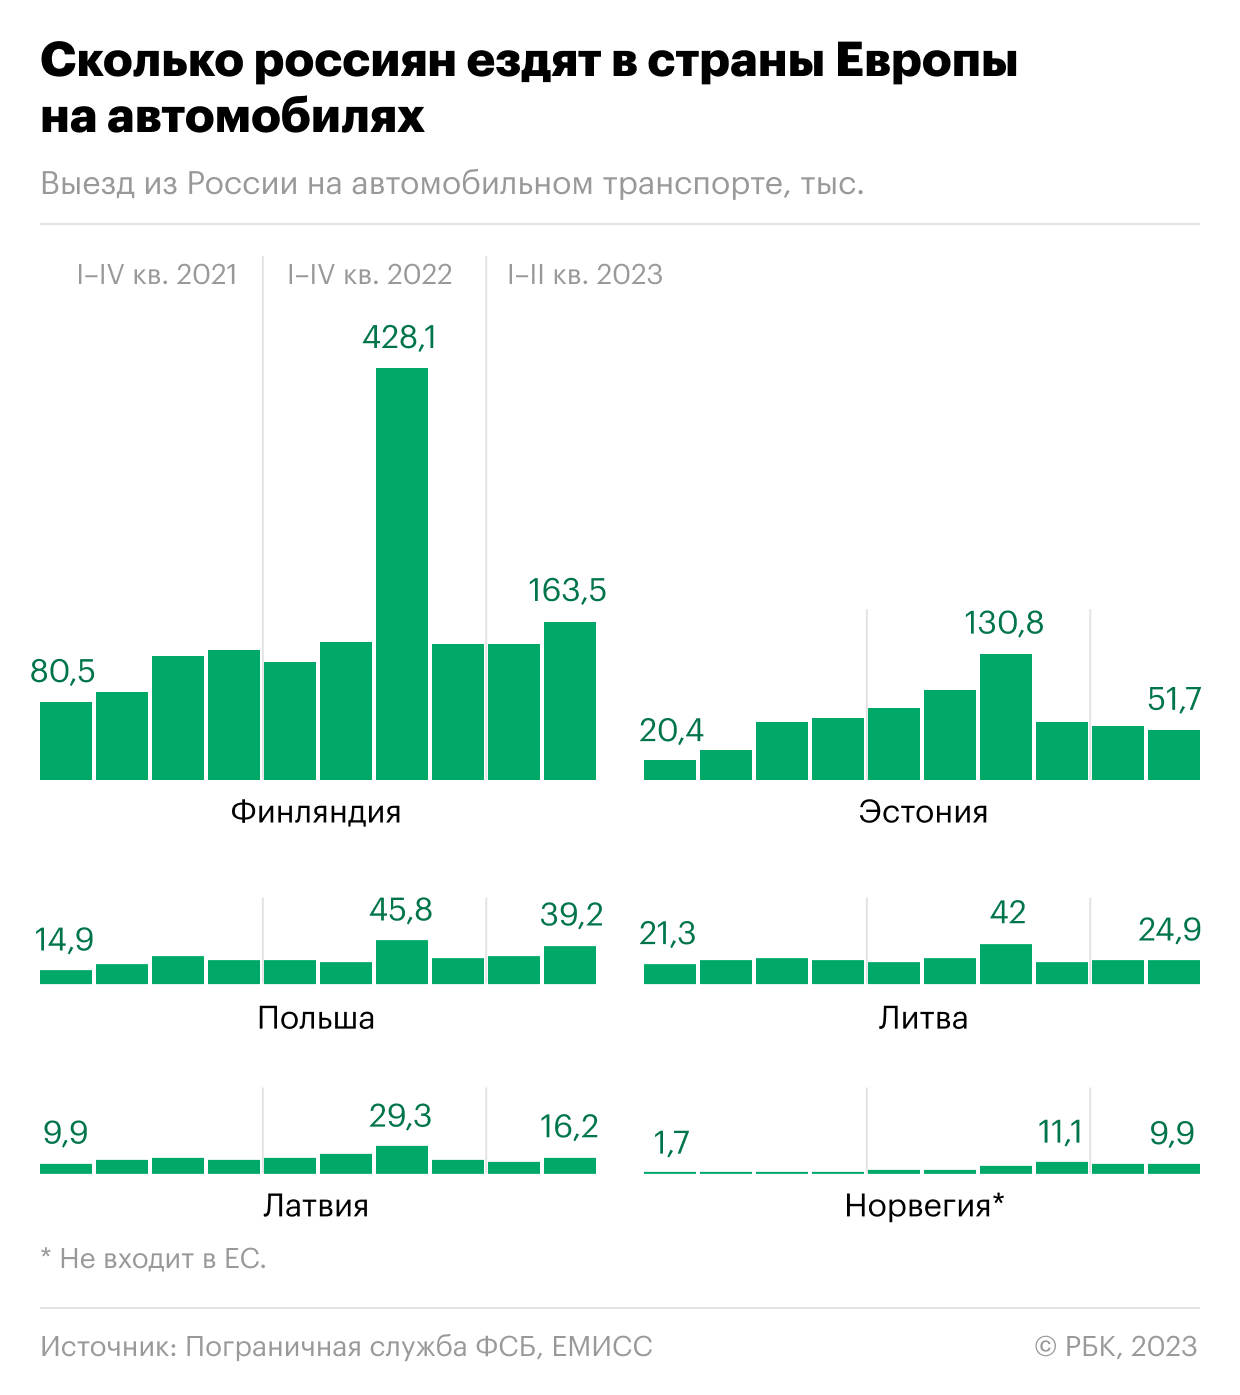 Сколько россиян въезжали в Европу на автомобилях. Инфографика